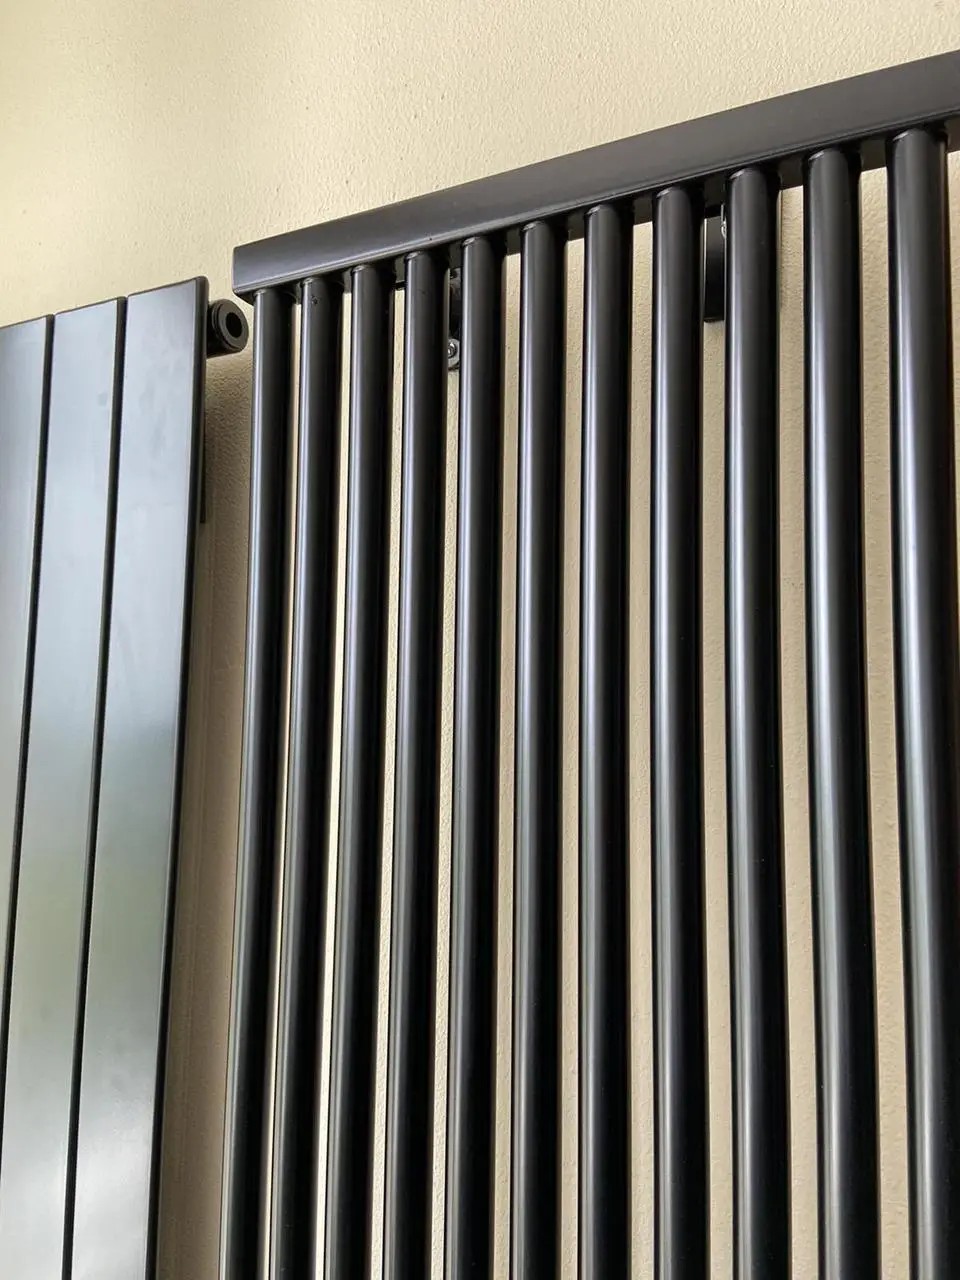 Радиатор для отопления Betatherm PS STYLE 1 H-1800мм, L-441мм (PS 1180/12 9005M 34) отзывы - изображения 5